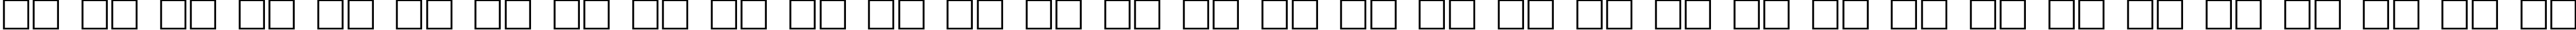 Пример написания русского алфавита шрифтом Animations